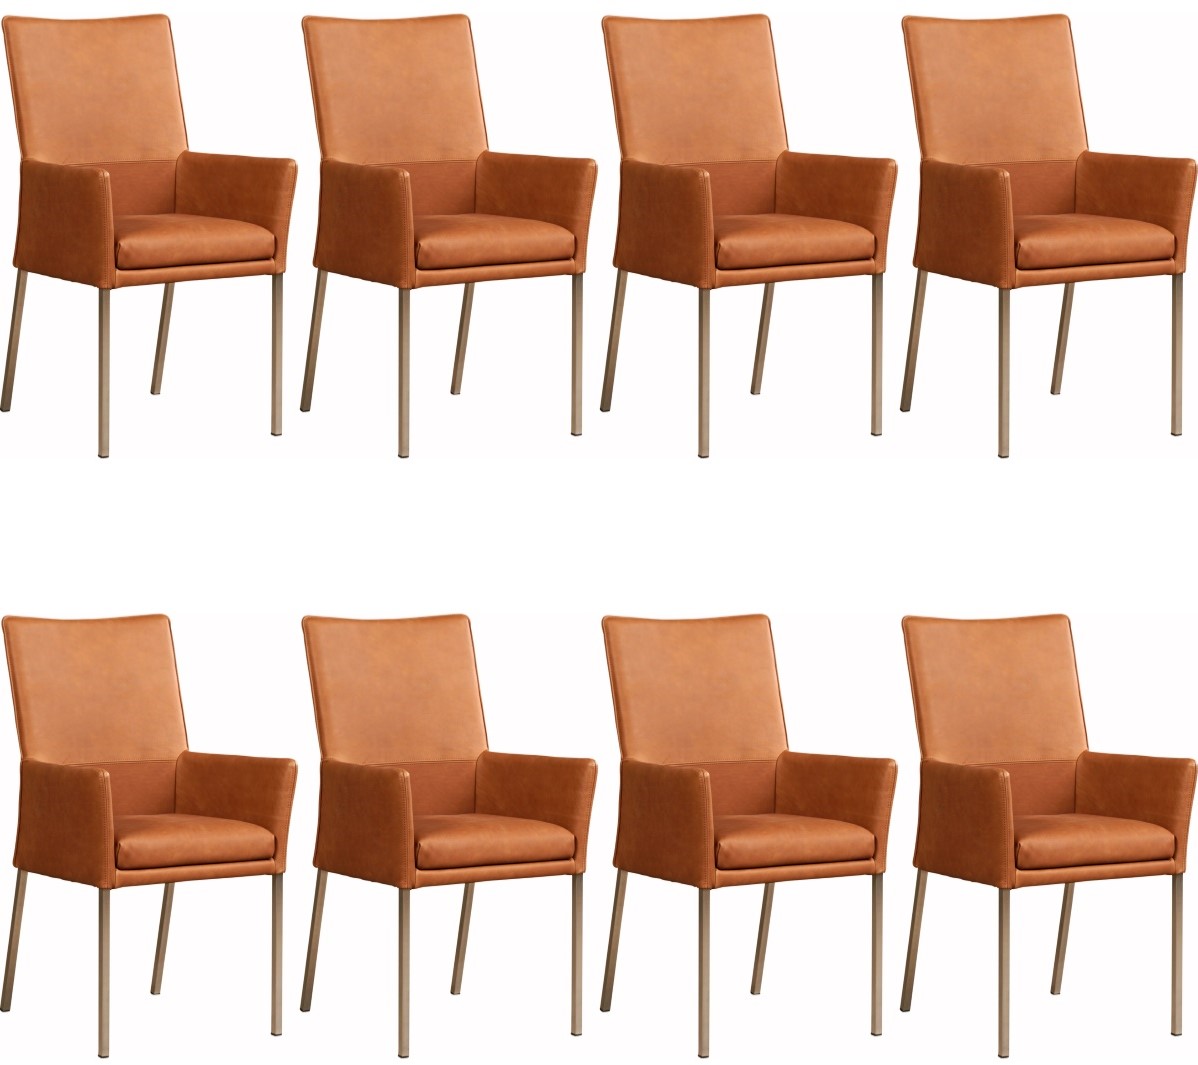 Leren eetkamerstoel Royal - met armleuning - set van 8 stoelen